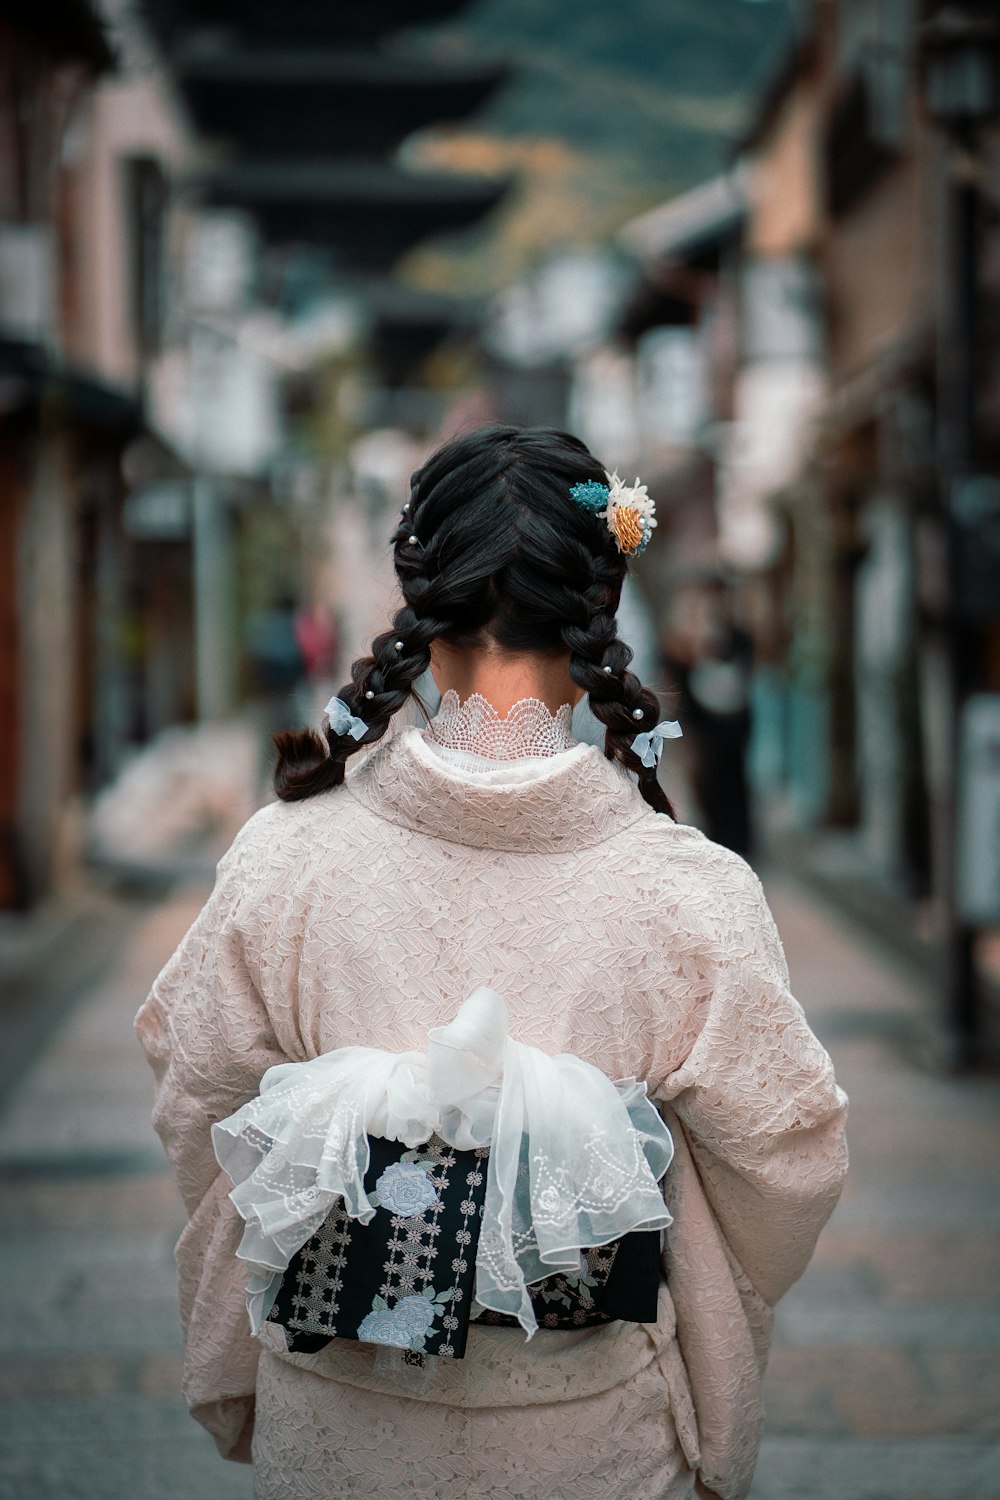 a woman in a kimono walking down a street